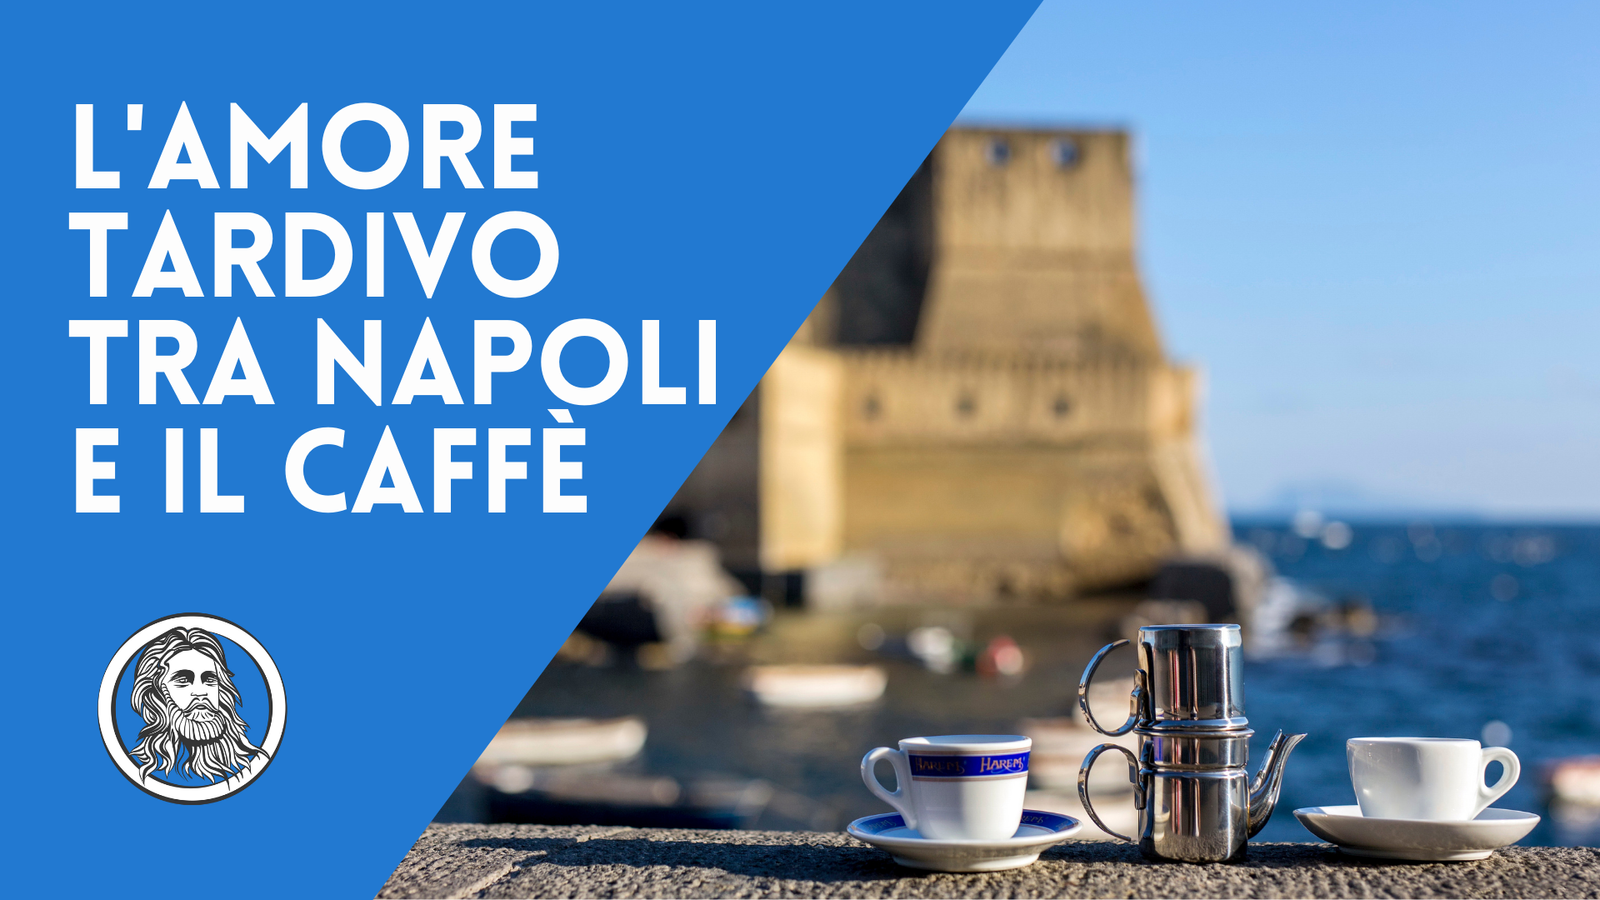 Storia del caffè a Napoli, un amore tardivo diventato tradizione